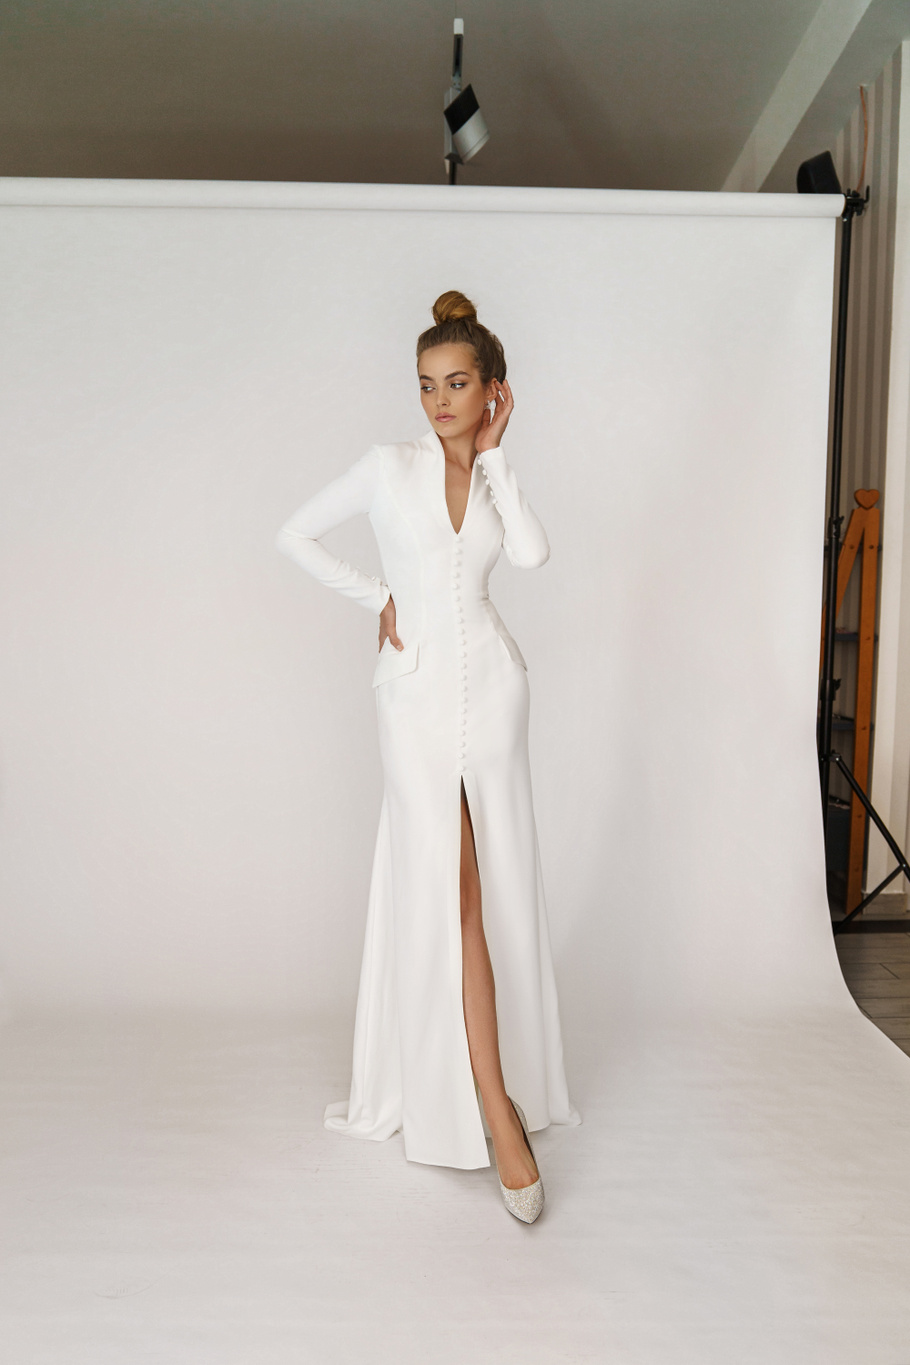 Свадебное платье «Олсен» Марта — купить в Ярославле платье Олсен из коллекции 2021 года